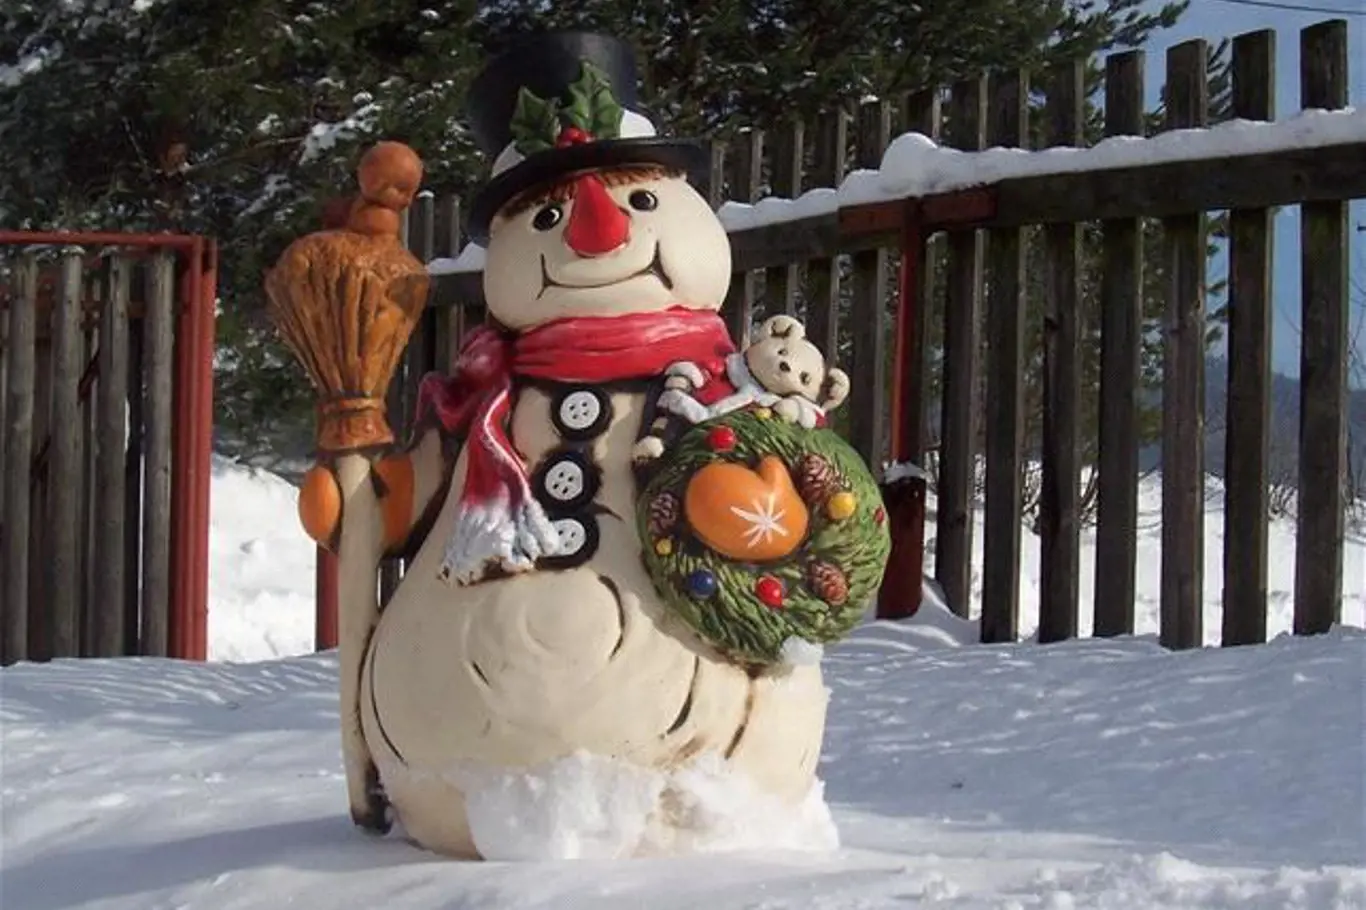 Mrazuodolné dekorace pro vaši zimní zahradu